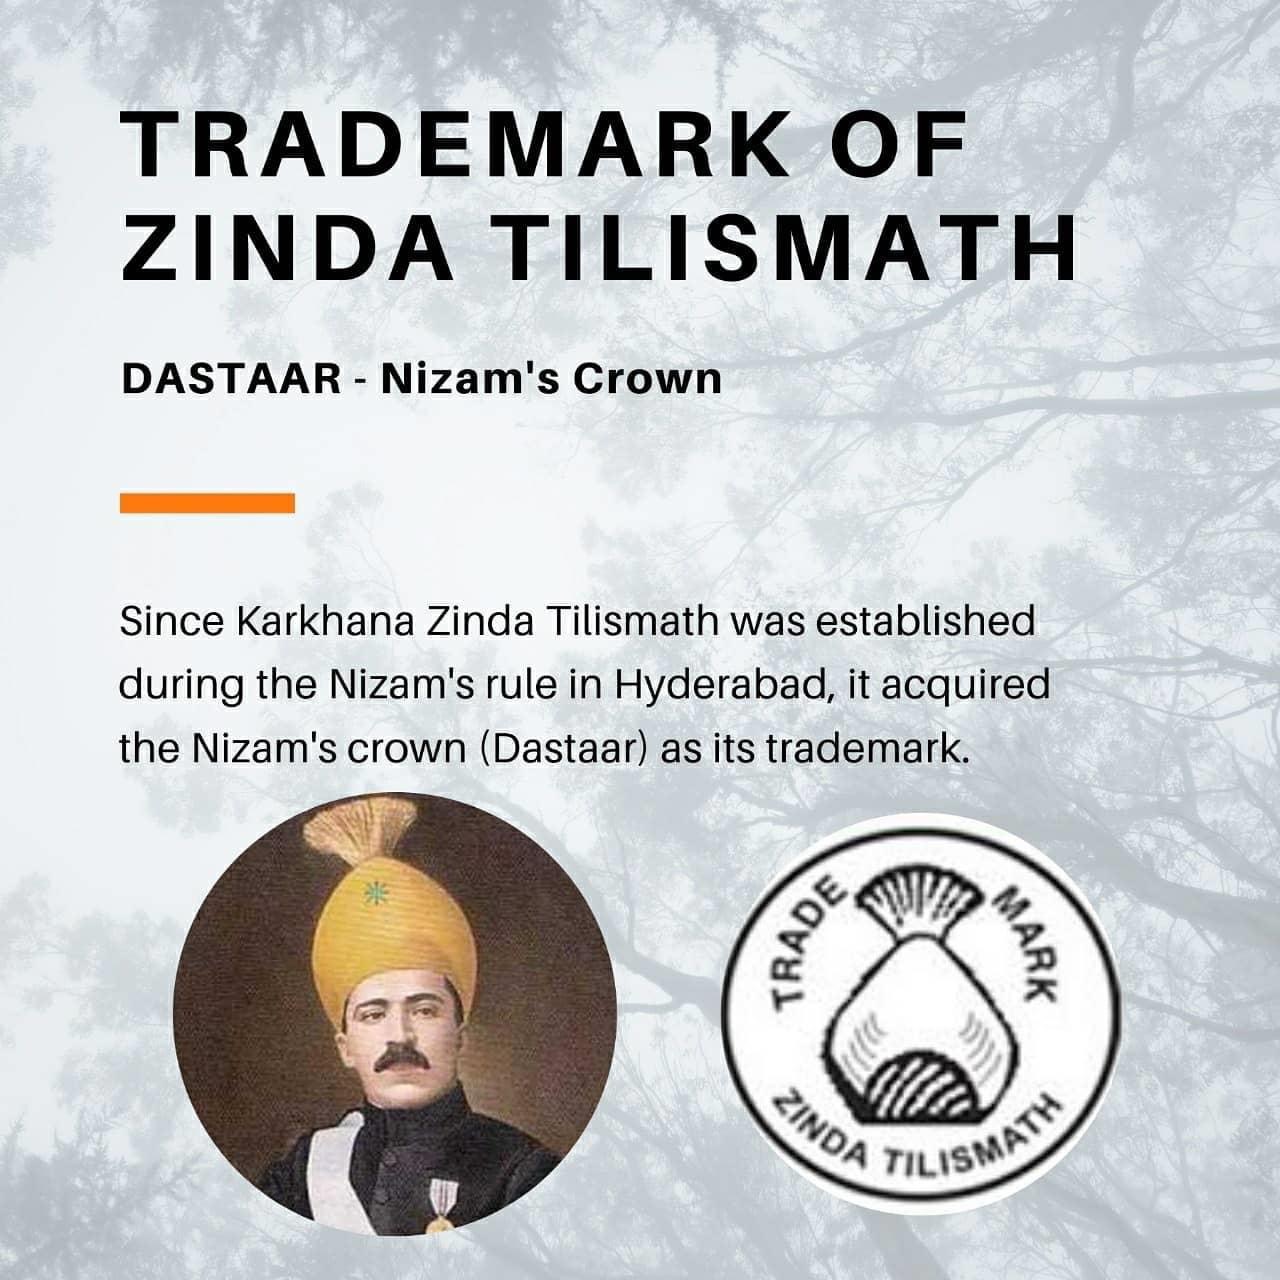 History of Zinda Tilismath